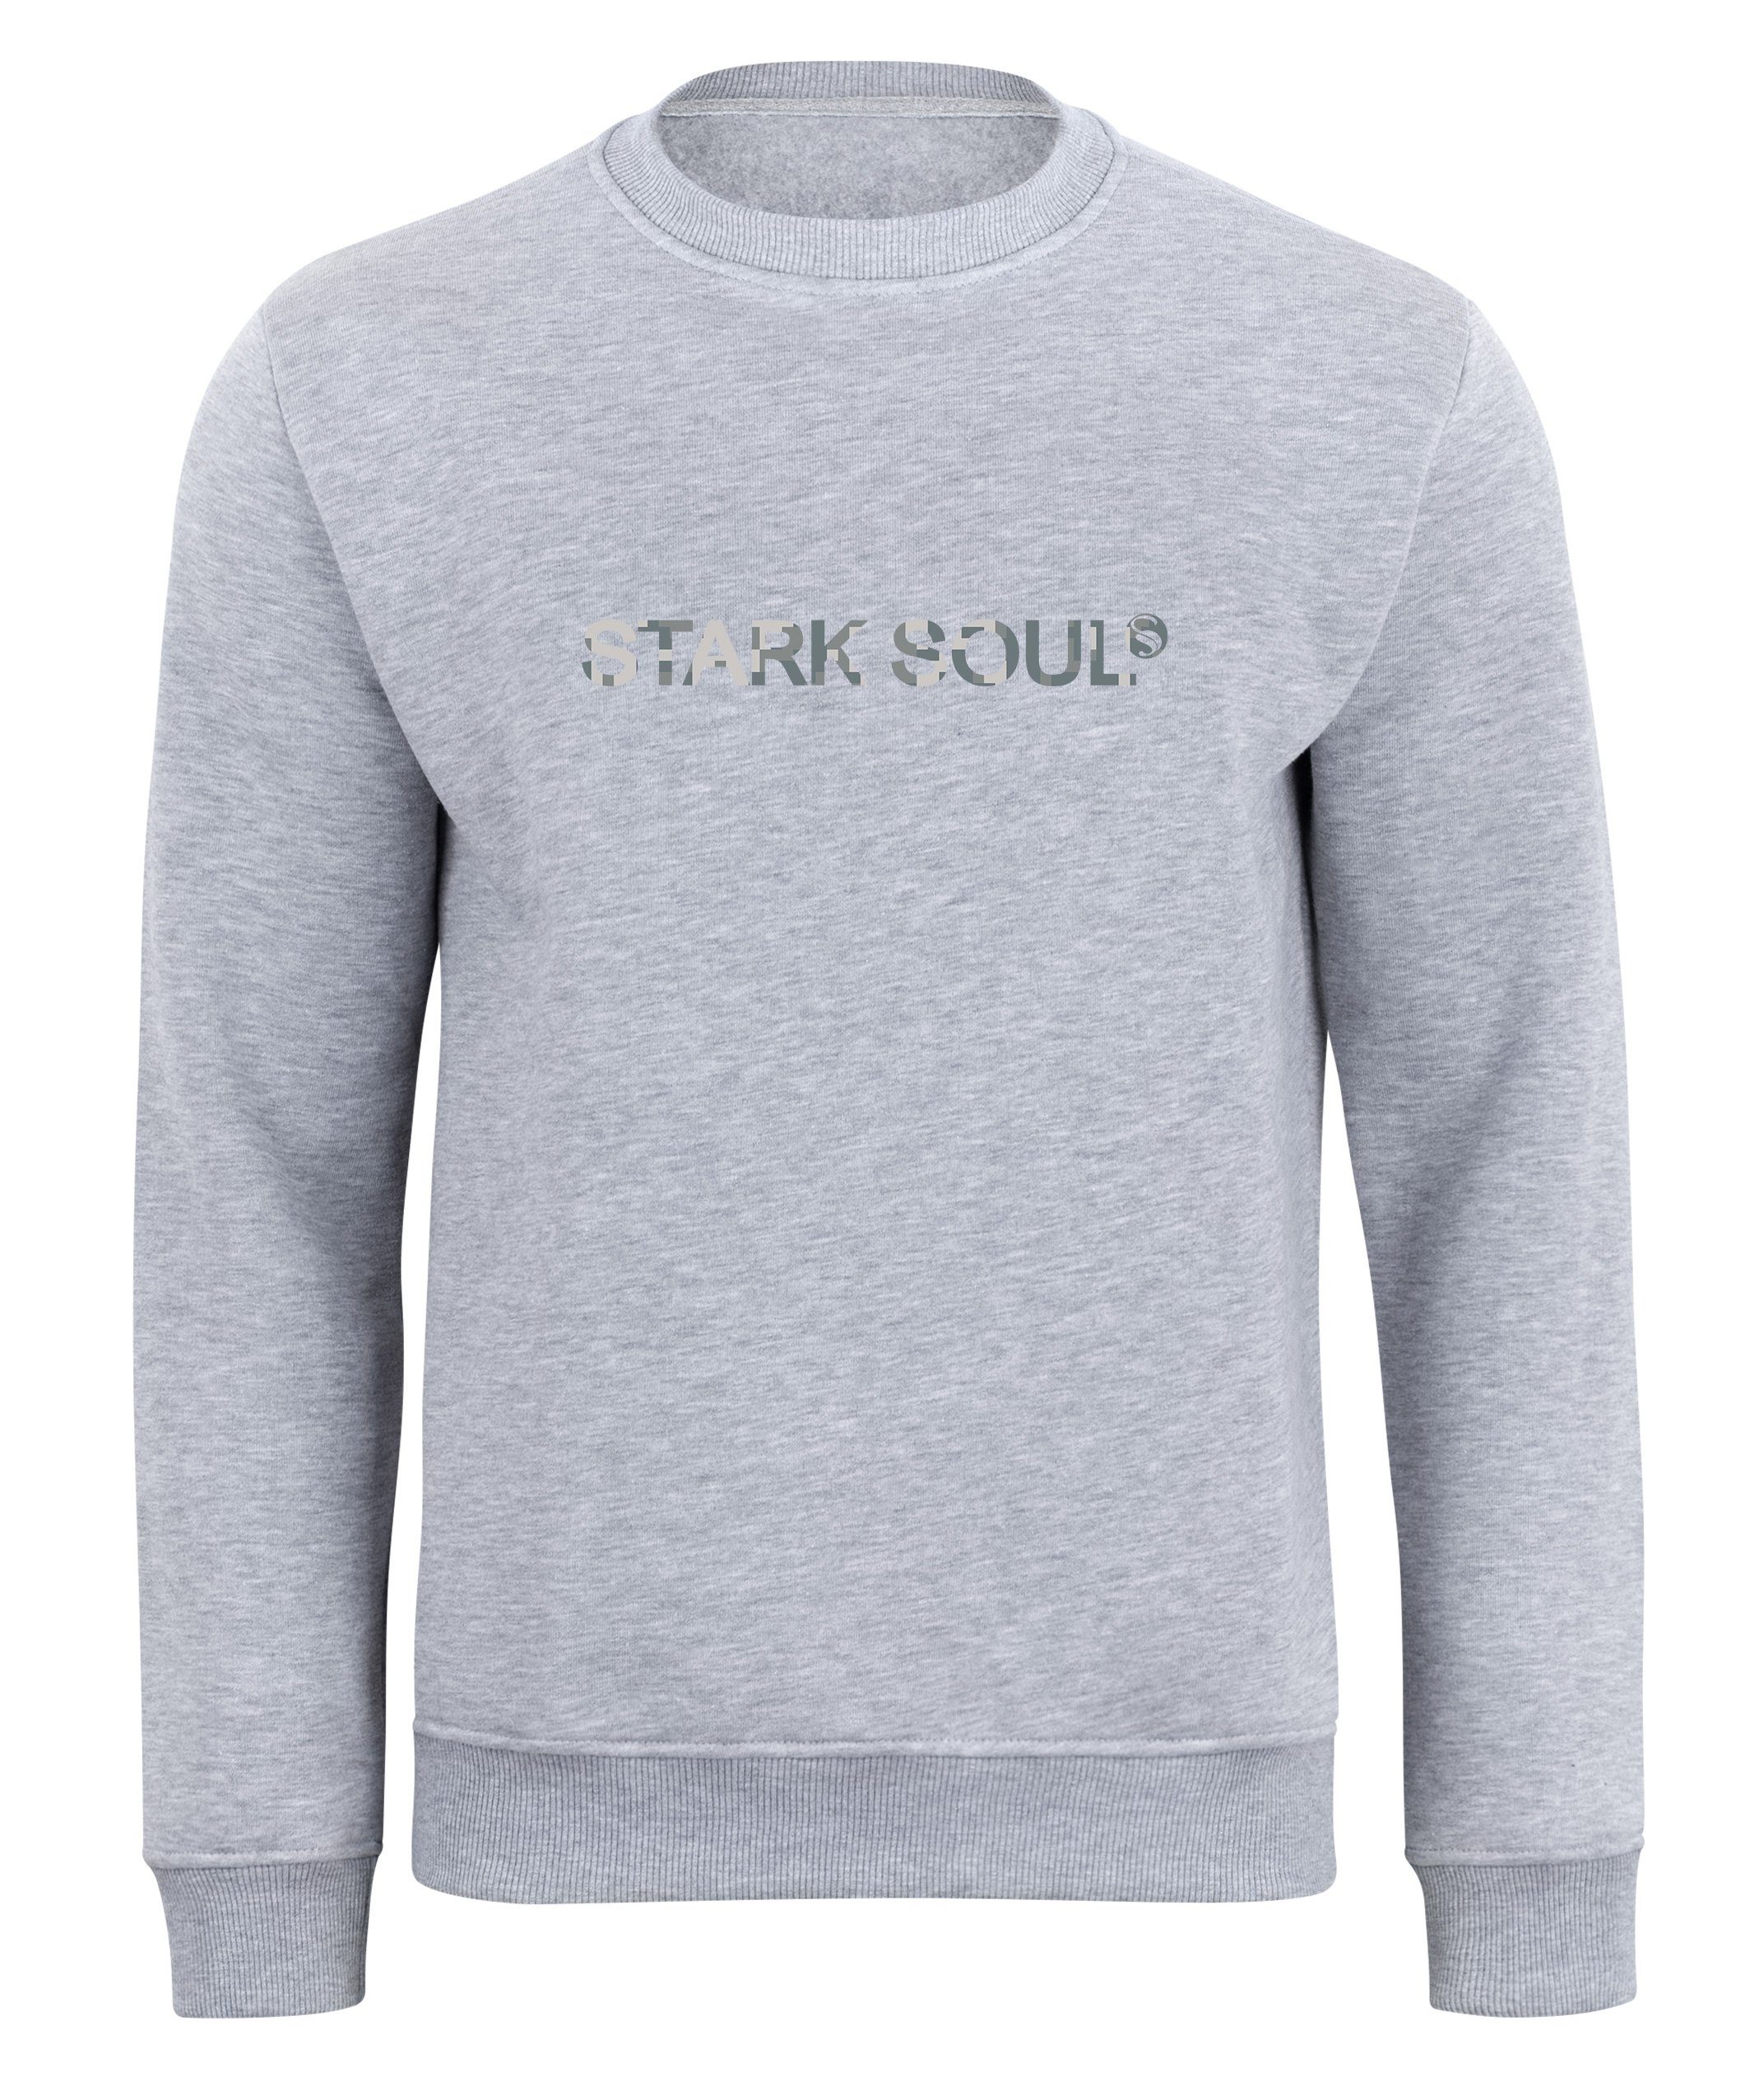 Grau-Melange Innen Stark Soul® Soul®"-Schriftzug "Stark angeraut mit French-Terry-Rundhals-Sweatshirt, Camouflage-Optik in Sweatshirt